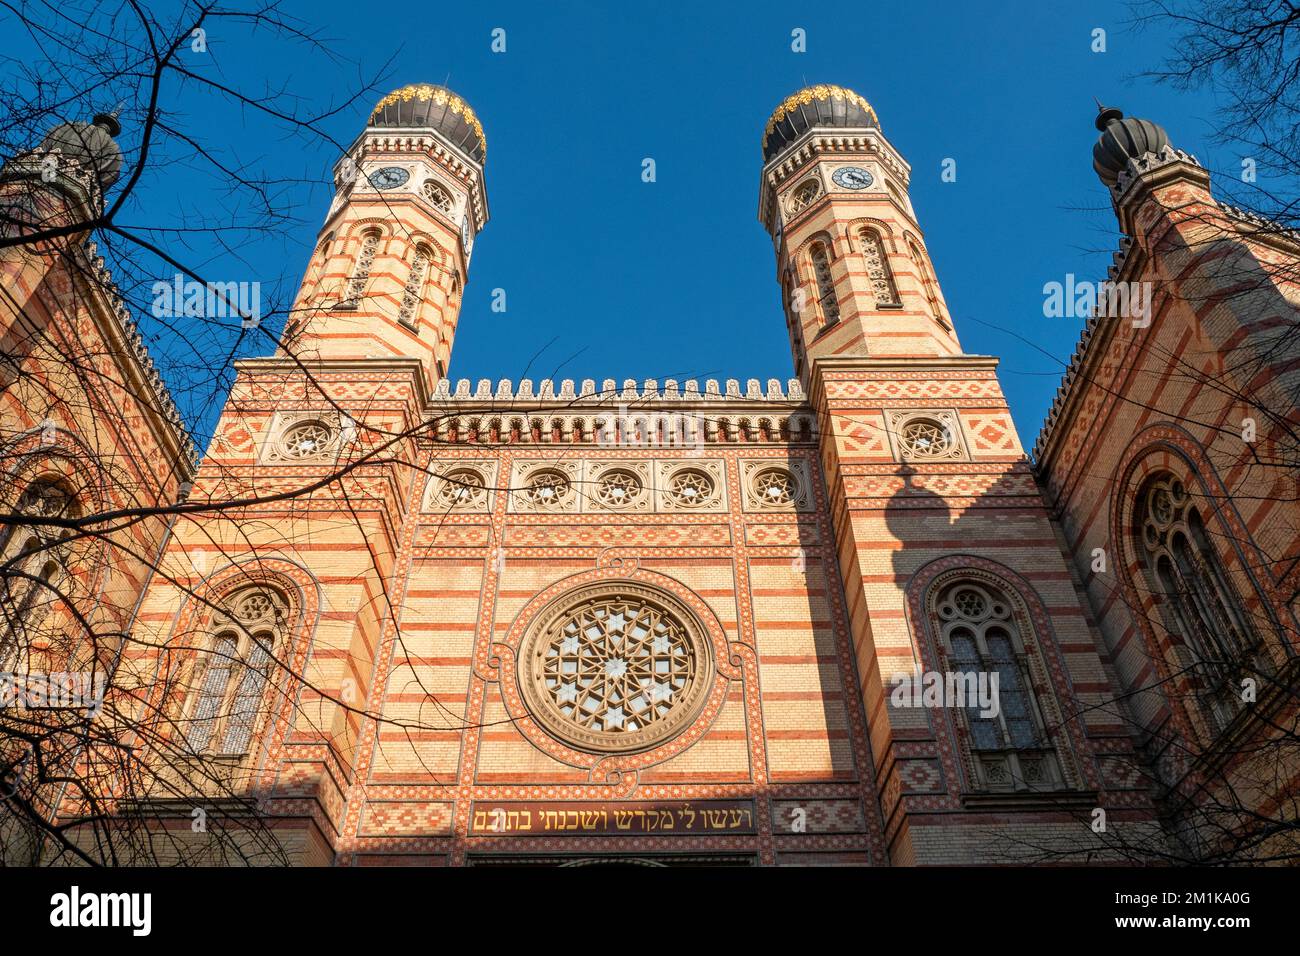 BUDAPEST - JANUAR 19: Fassade der Großen Synagoge oder der Dohany Street Synagoge in Budapest am 19. Januar. 2022 in Ungarn Stockfoto